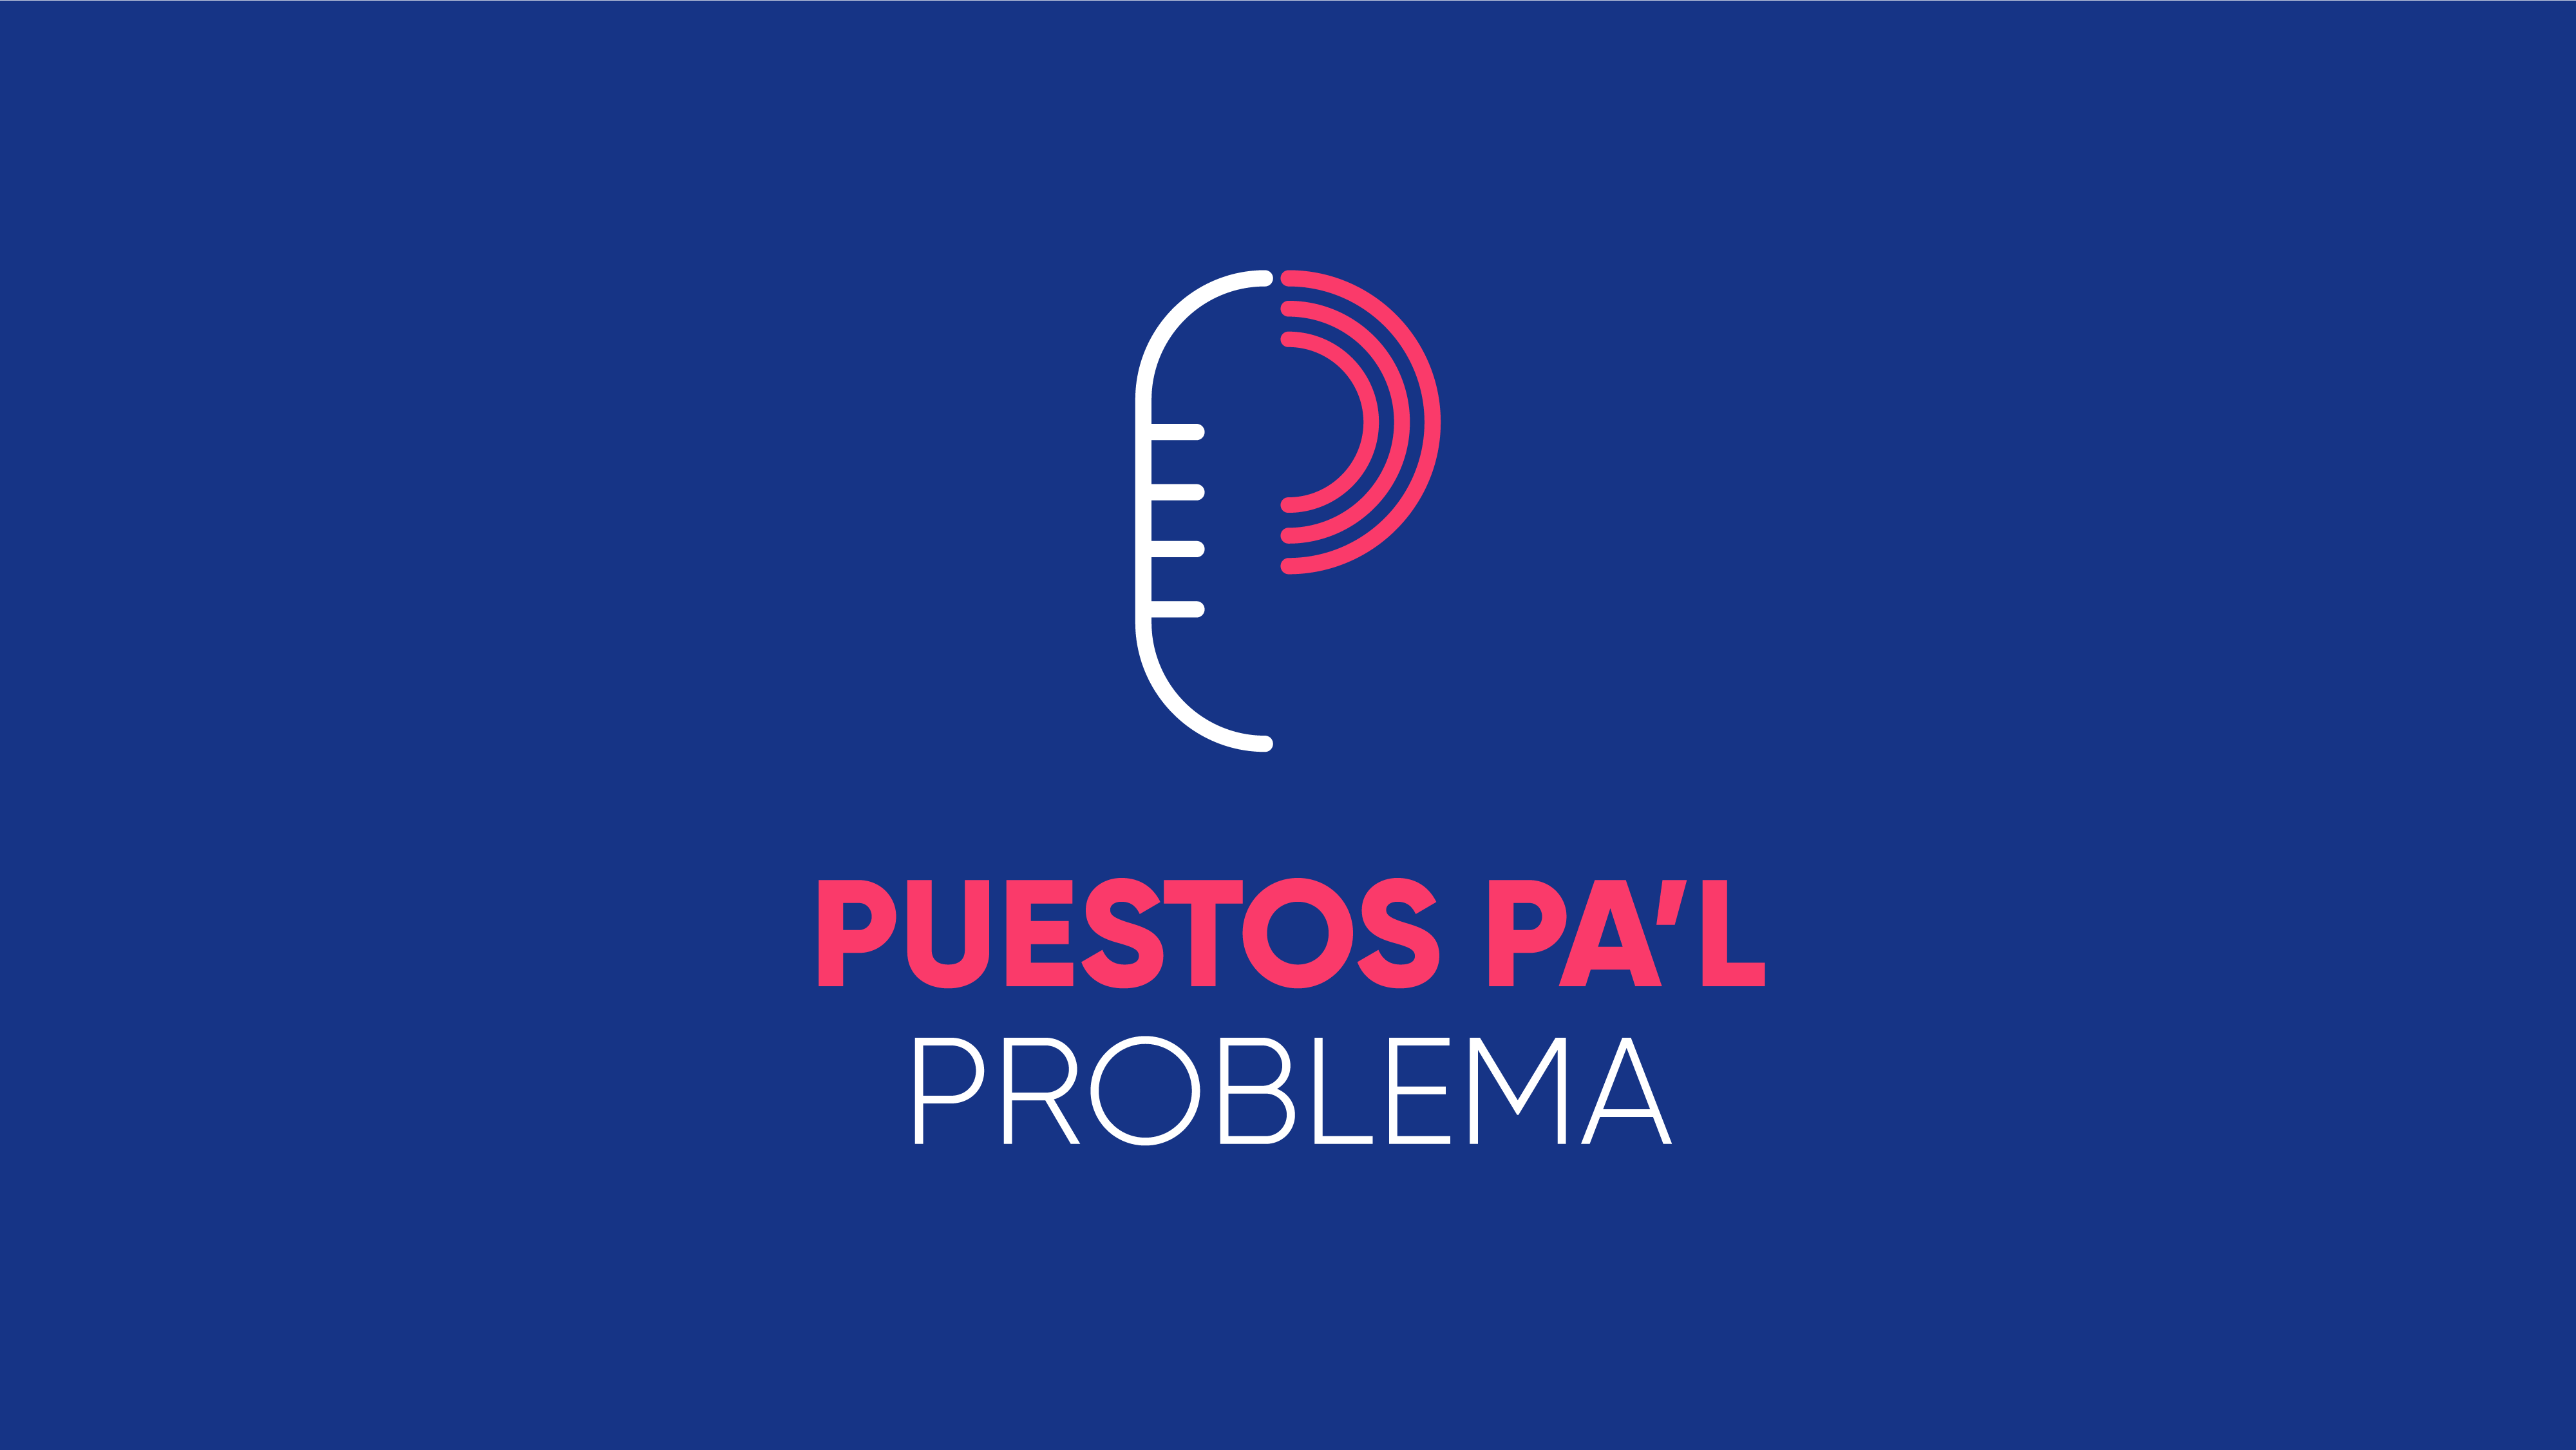 PPP Extra: Ricky Rosselló insiste en votar en Puerto Rico + Puestos Pa’l Internet con Gino Villarini de Aeronet